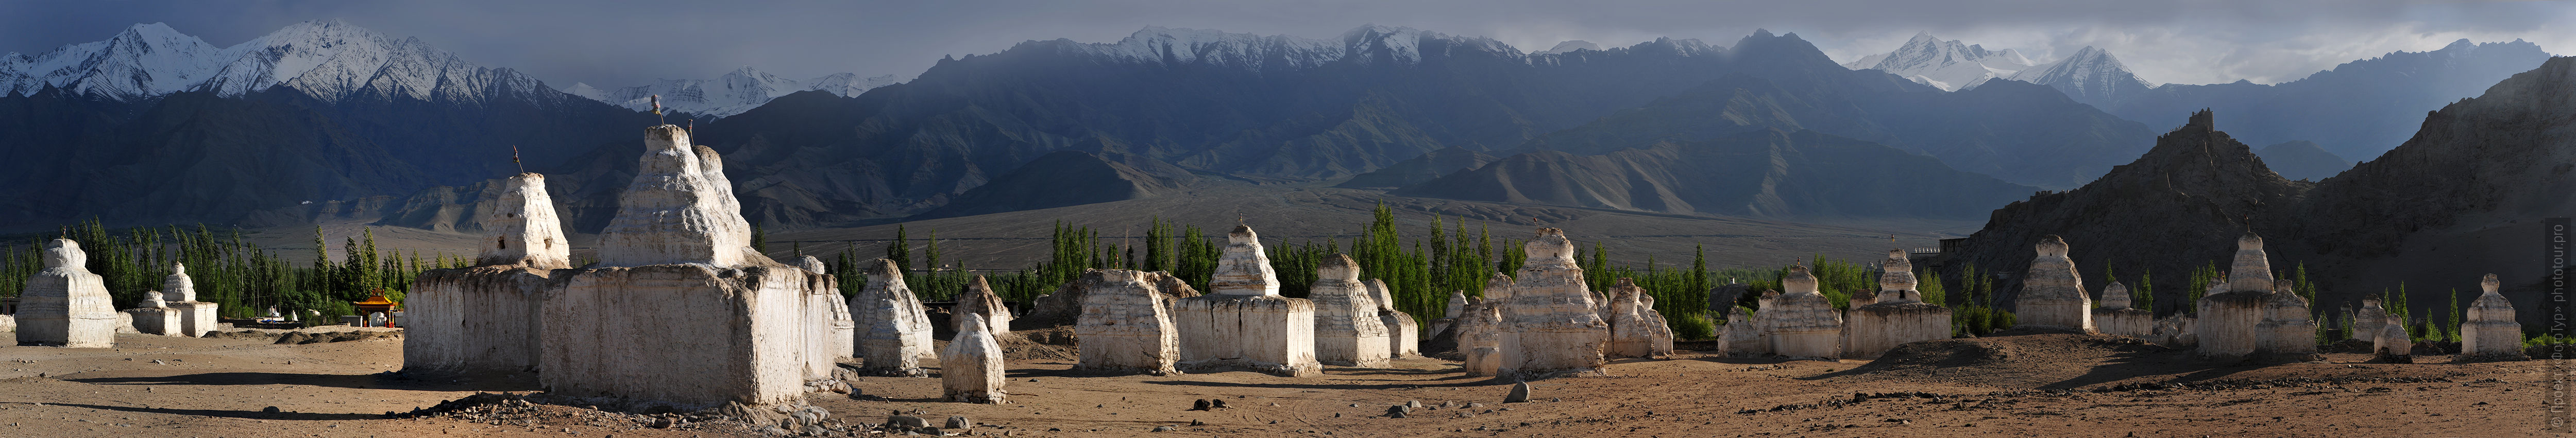 Белые ступы Шей Гонпы, Ладакх, Горные цепи Ладакха, медитационный Ретрит Истоки Тибета, буддийская мистерия Танец Цам в Ламаюру, июнь 2020 года.